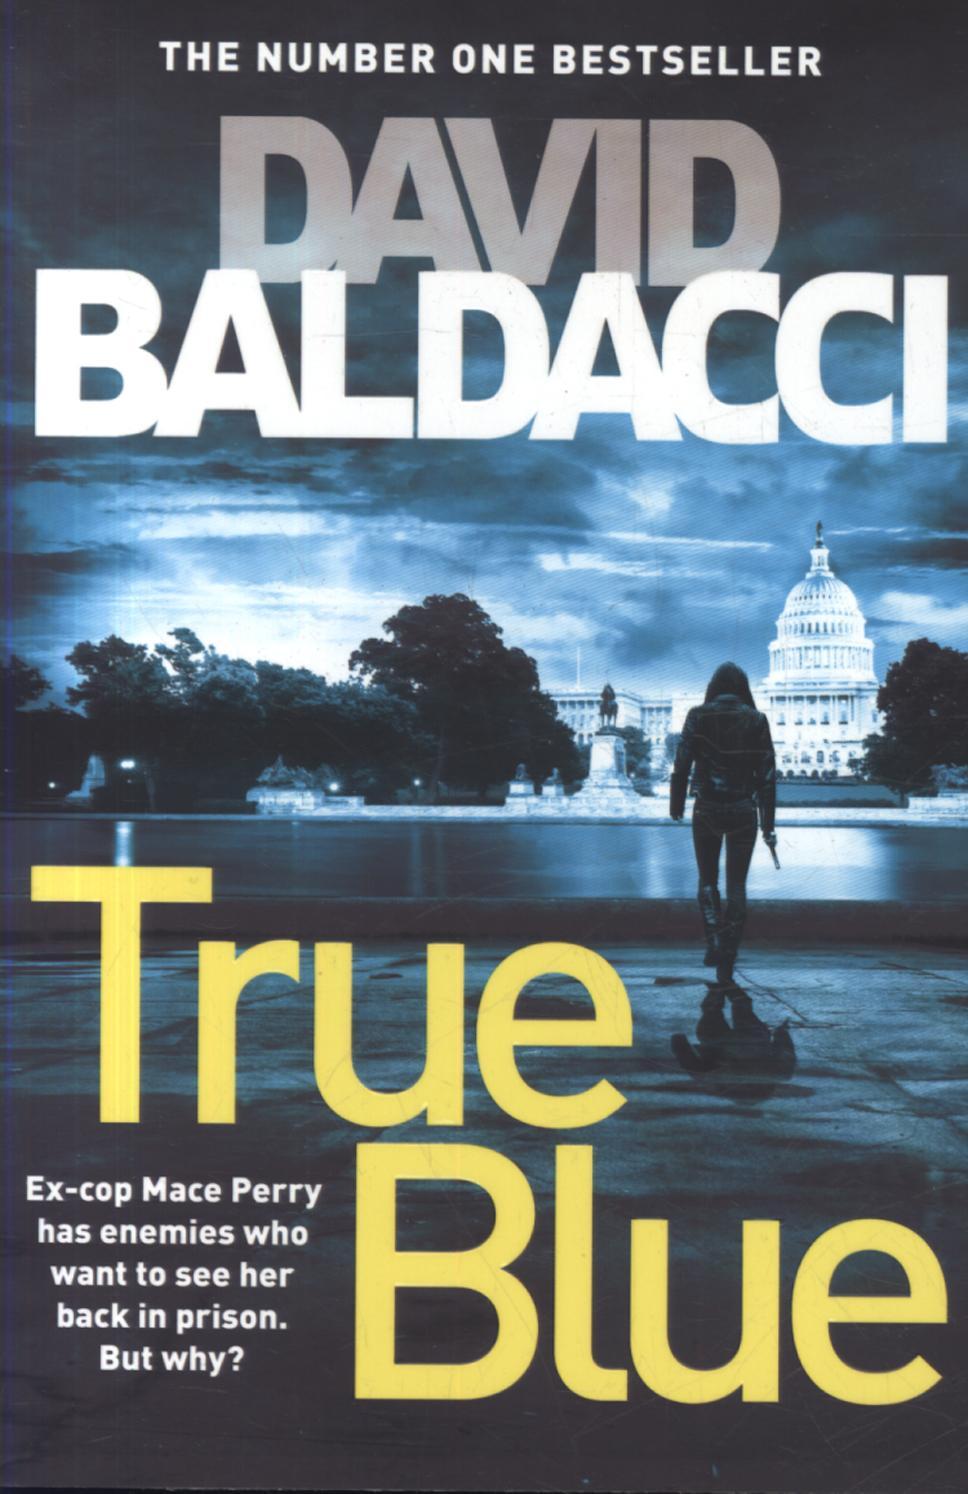 True Blue - David Baldacci